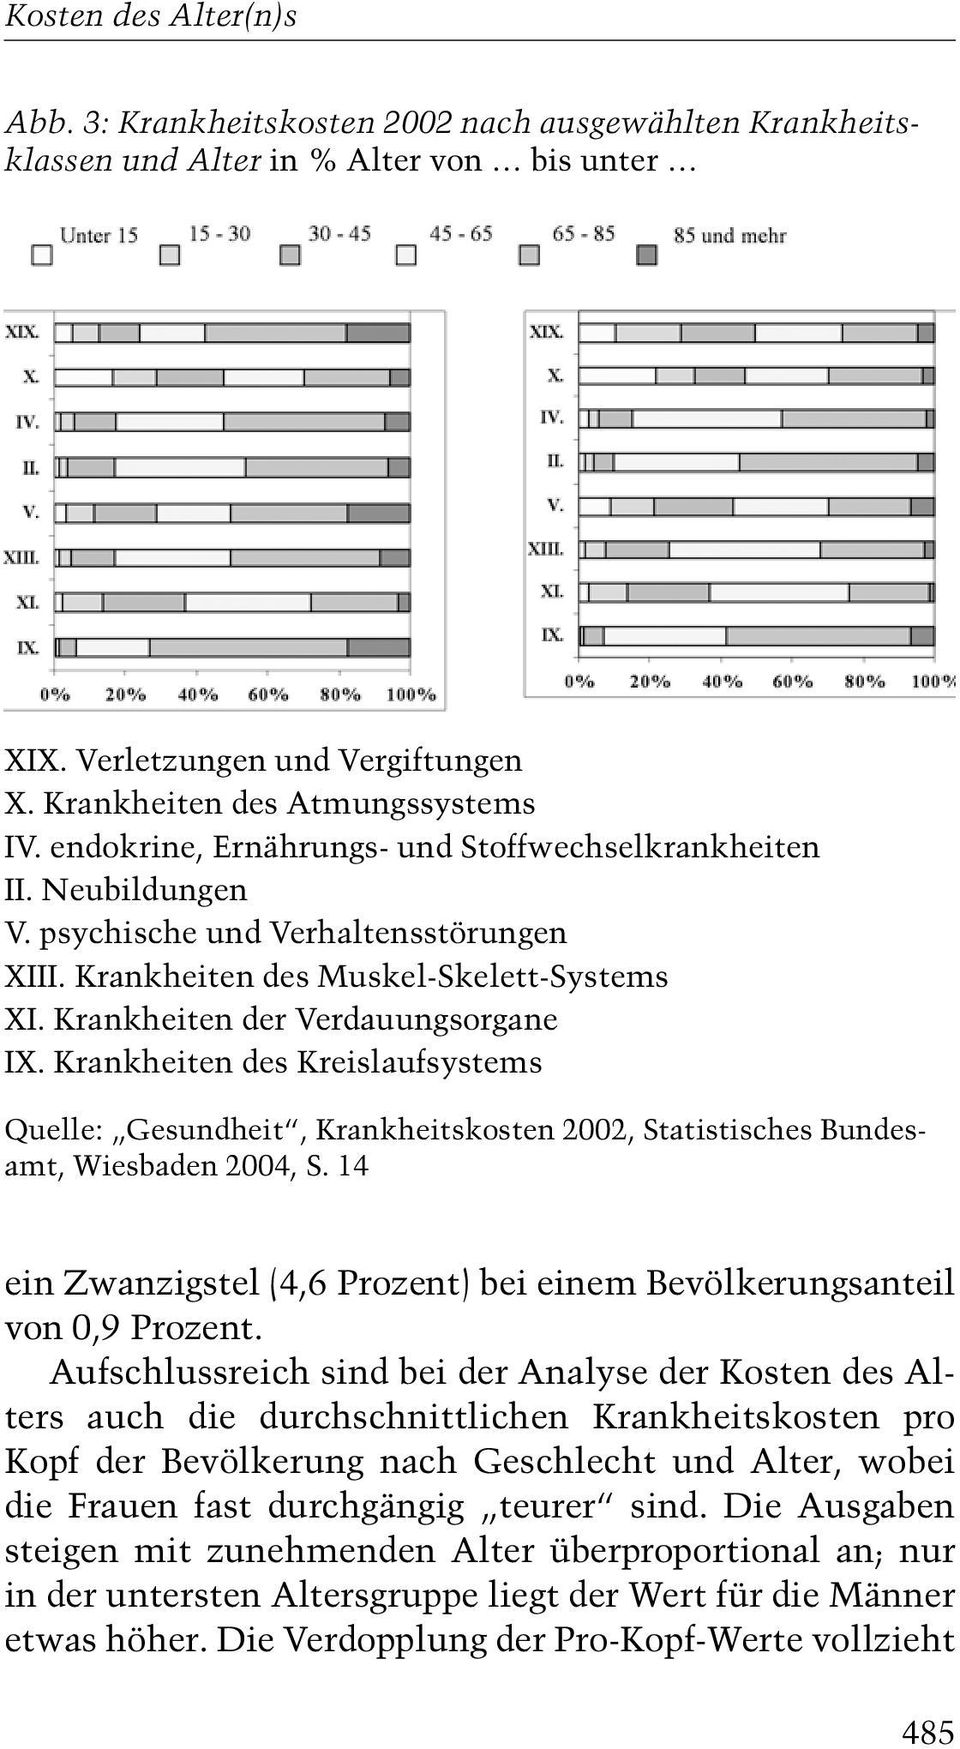 Krankheiten des Kreislaufsystems Quelle: ¹Gesundheitª, Krankheitskosten 2002, Statistisches Bundesamt, Wiesbaden 2004, S. 14 ein Zwanzigstel 4,6 Prozent) bei einem Bevölkerungsanteil von 0,9 Prozent.